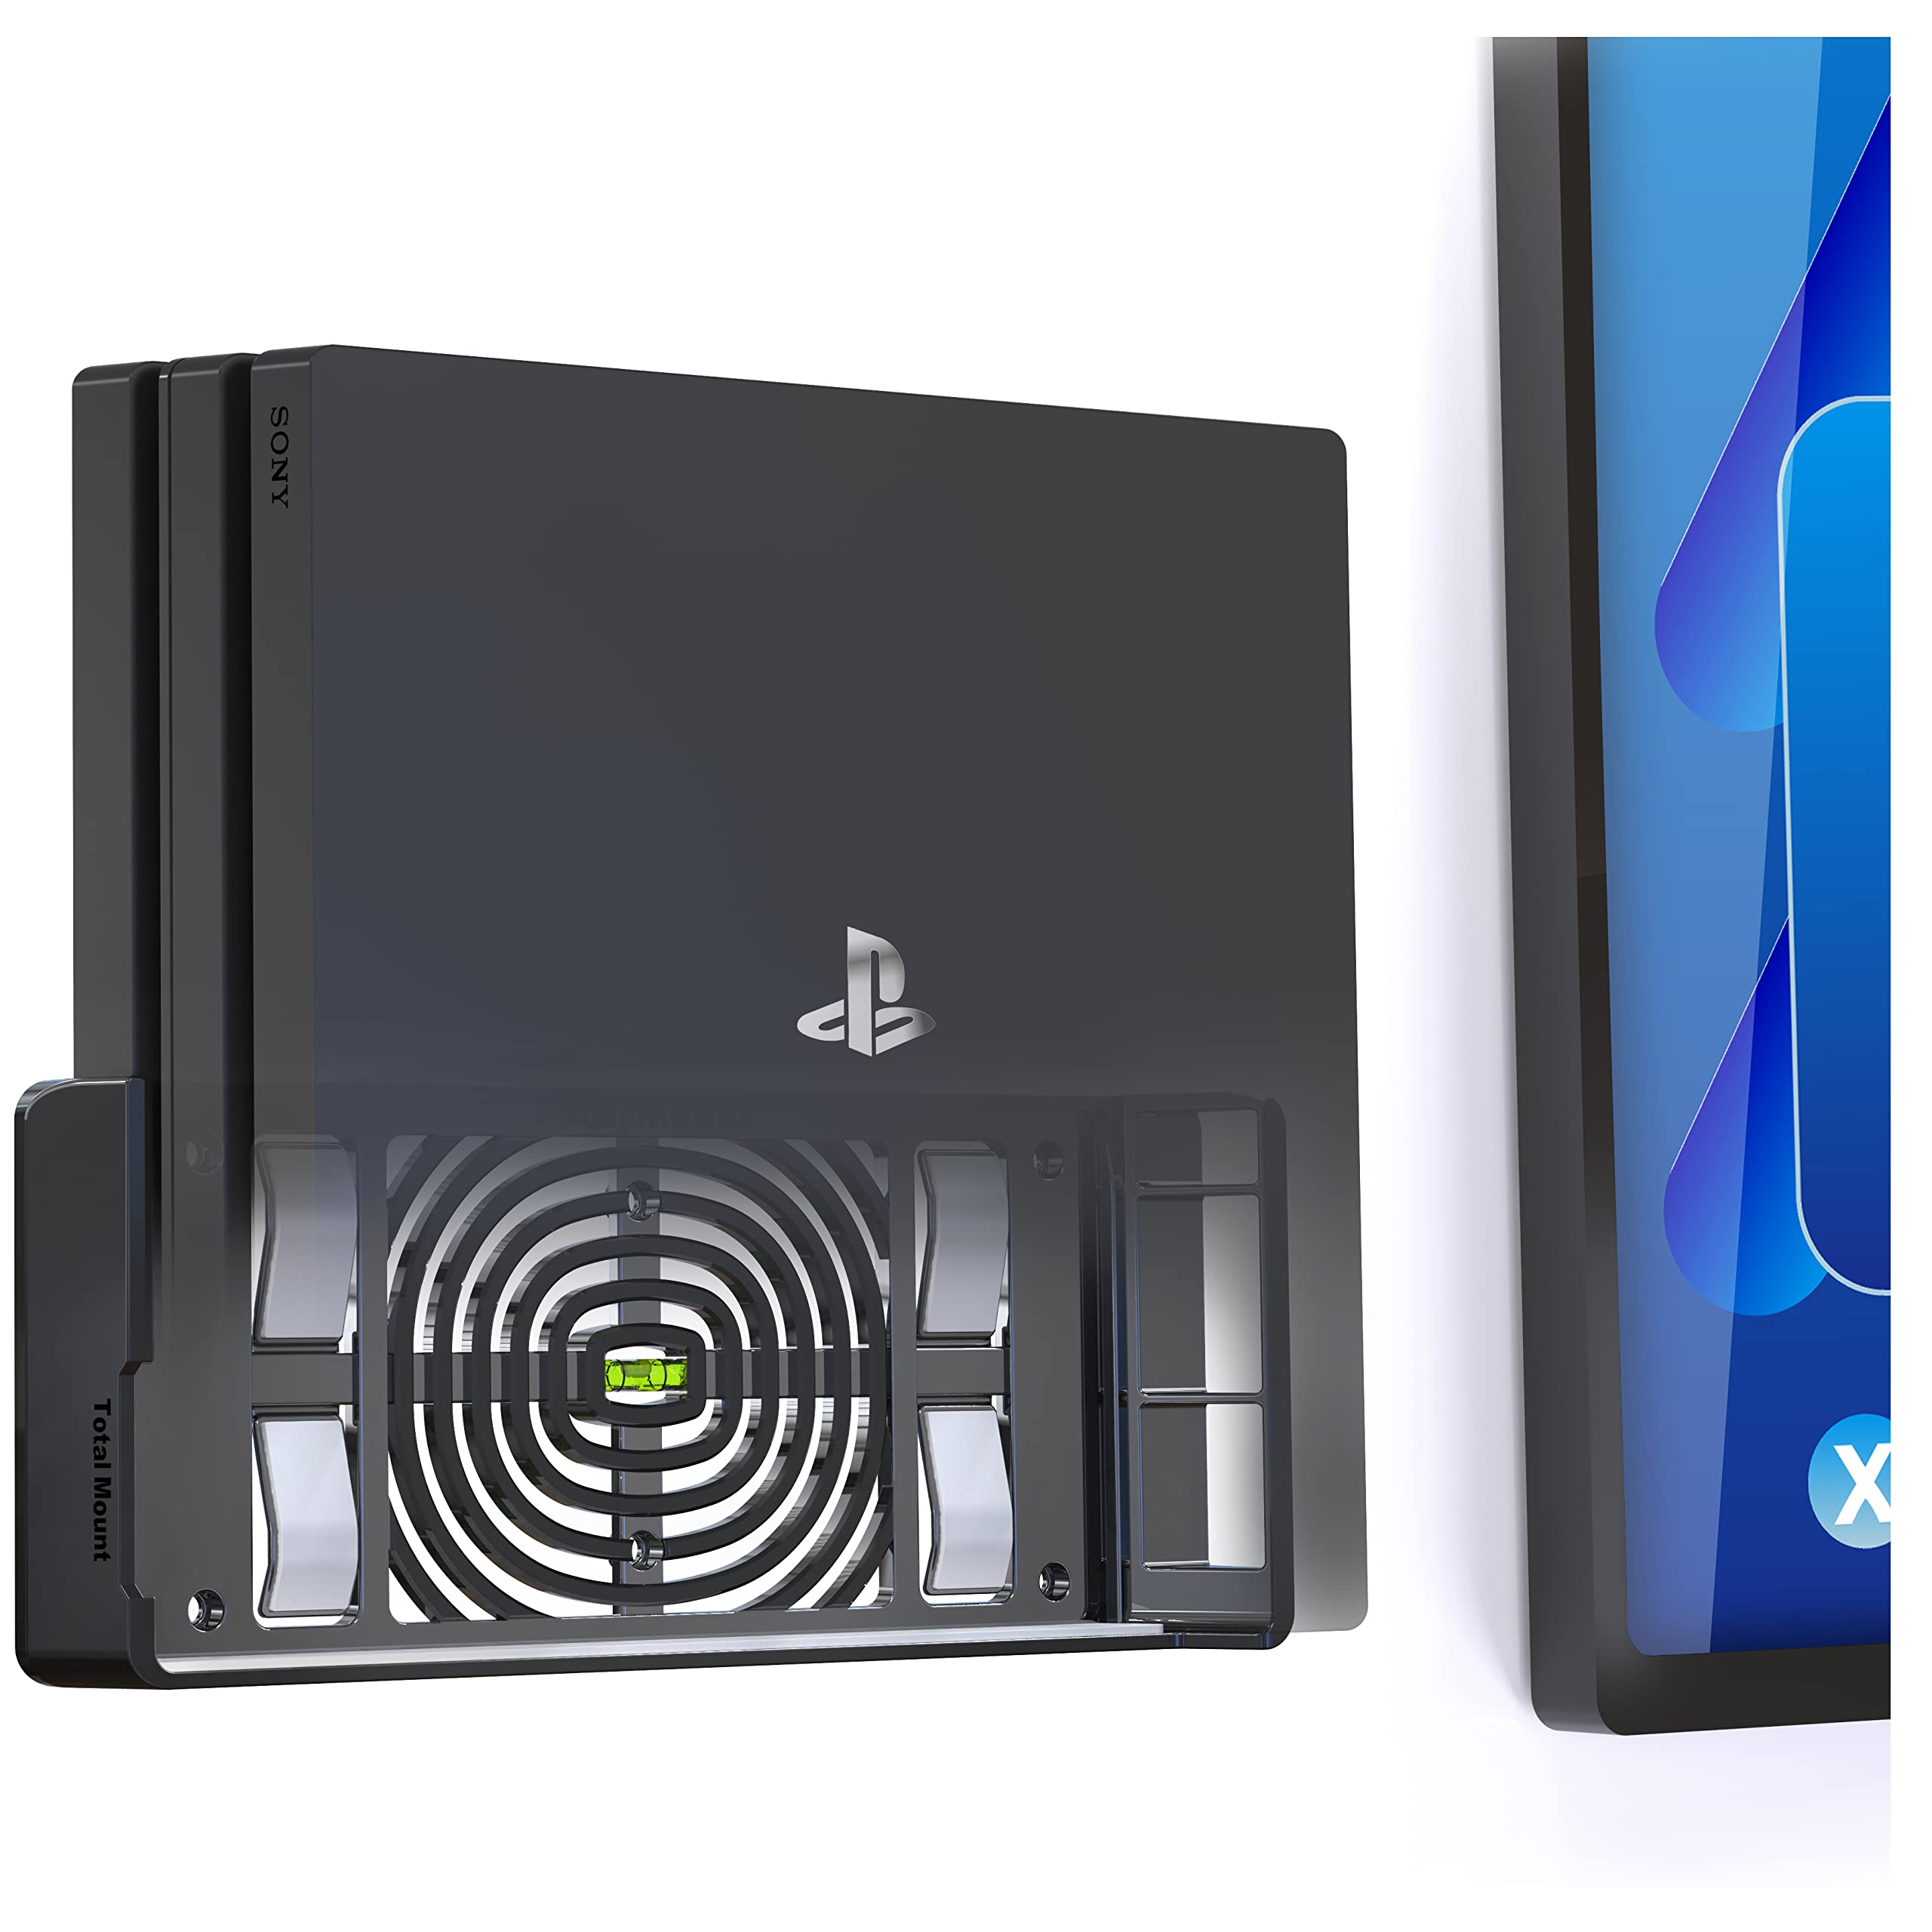 TotalMount 2524 Wandhalterung für Sony PlayStation 4 Pro Konsole mit Hitze Management und Sicherheits-Klip Schwarz